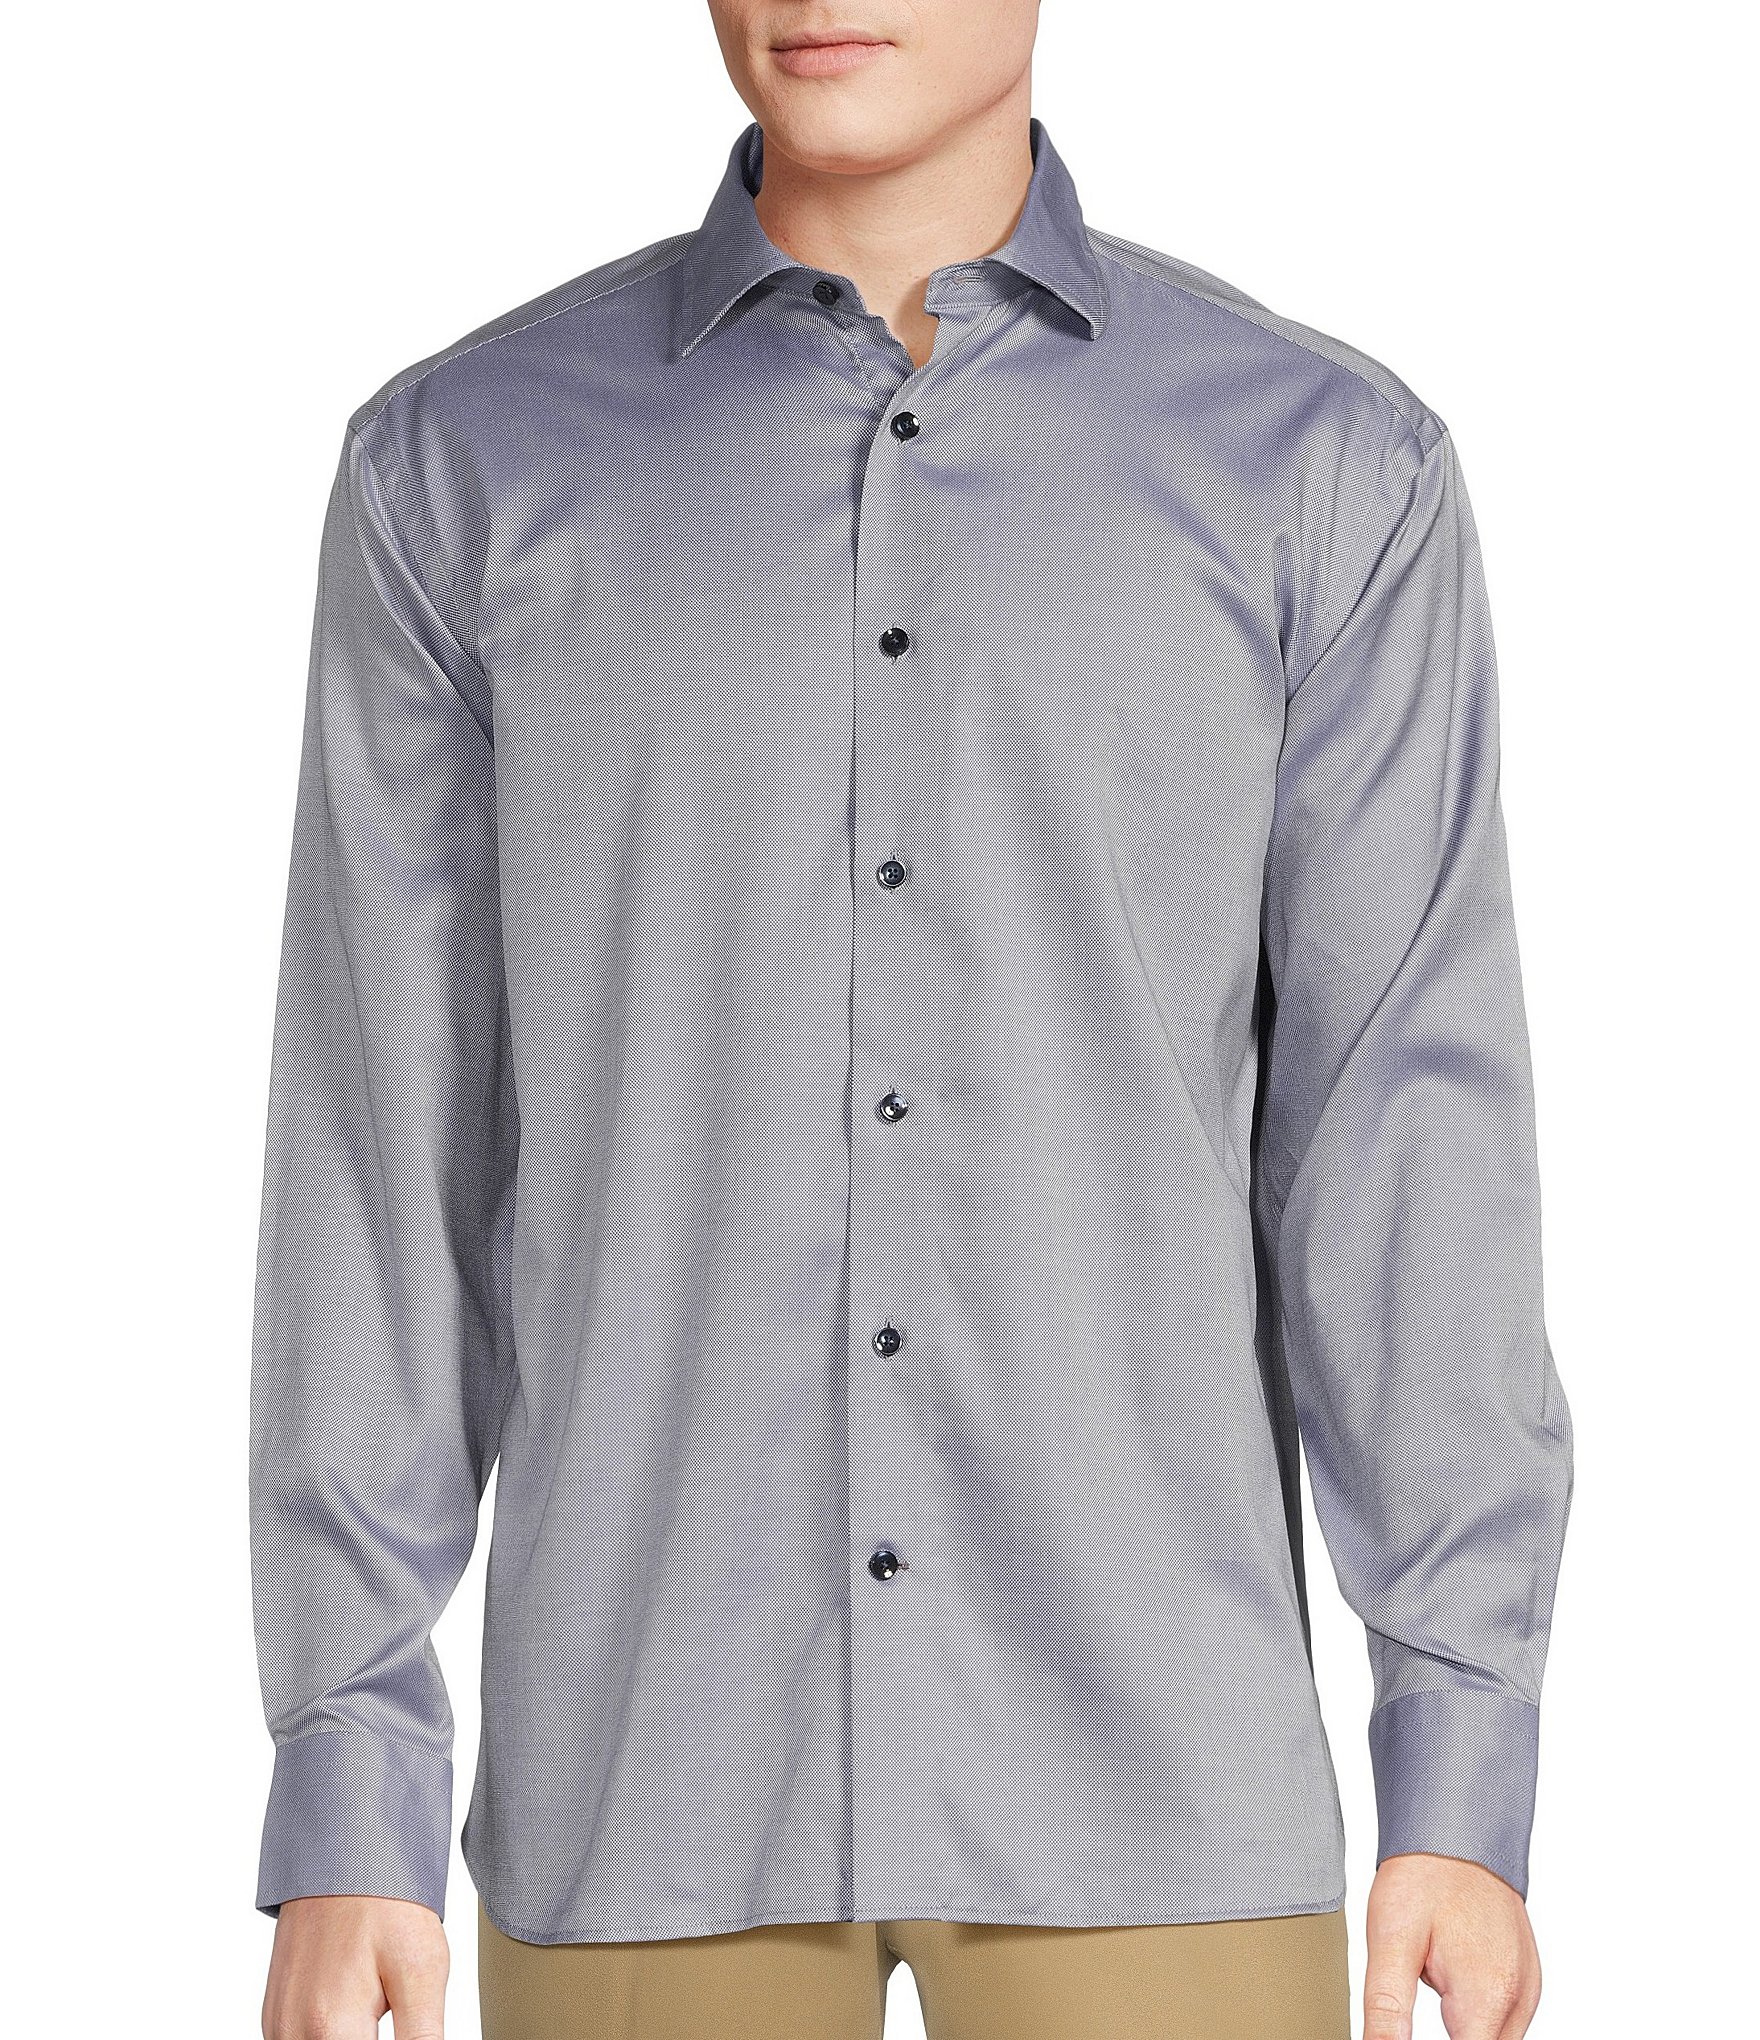 Cremieux Long Sleeve Washed Linen Safari Shirt, $79, Dillard's